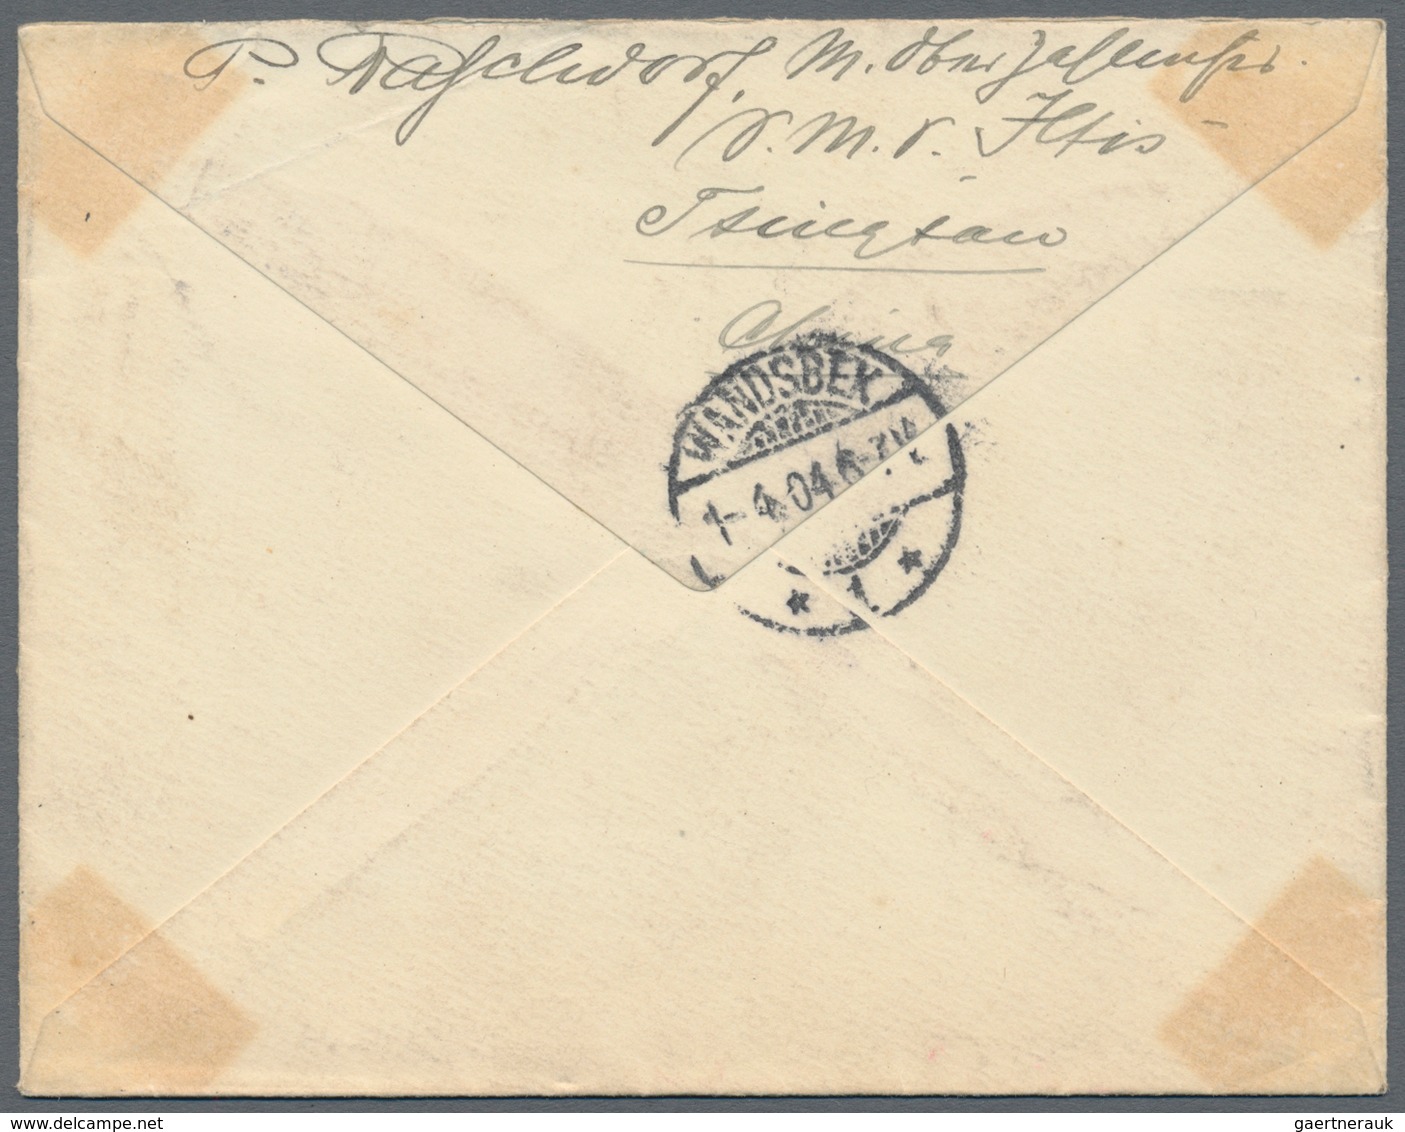 Deutsche Post in China - Besonderheiten: 1896/1912, sechs Belege (u.a. japan. Schmuckbrief aus 1895,